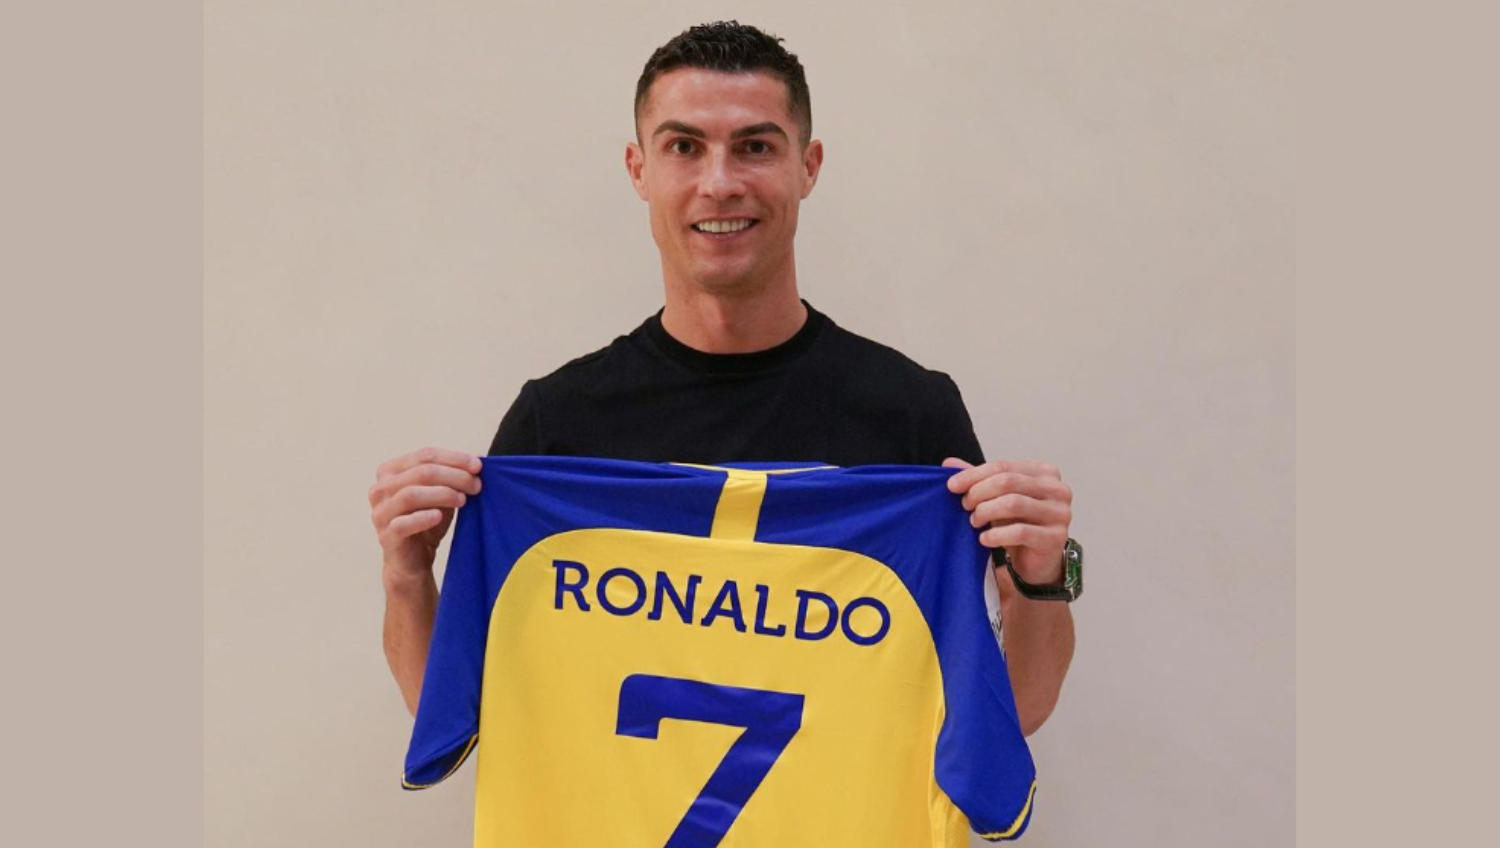 El nuevo club de Cristiano Ronaldo viste de azul y amarillo. (Foto Prensa Libre: Instagram/Cristiano Ronaldo) 